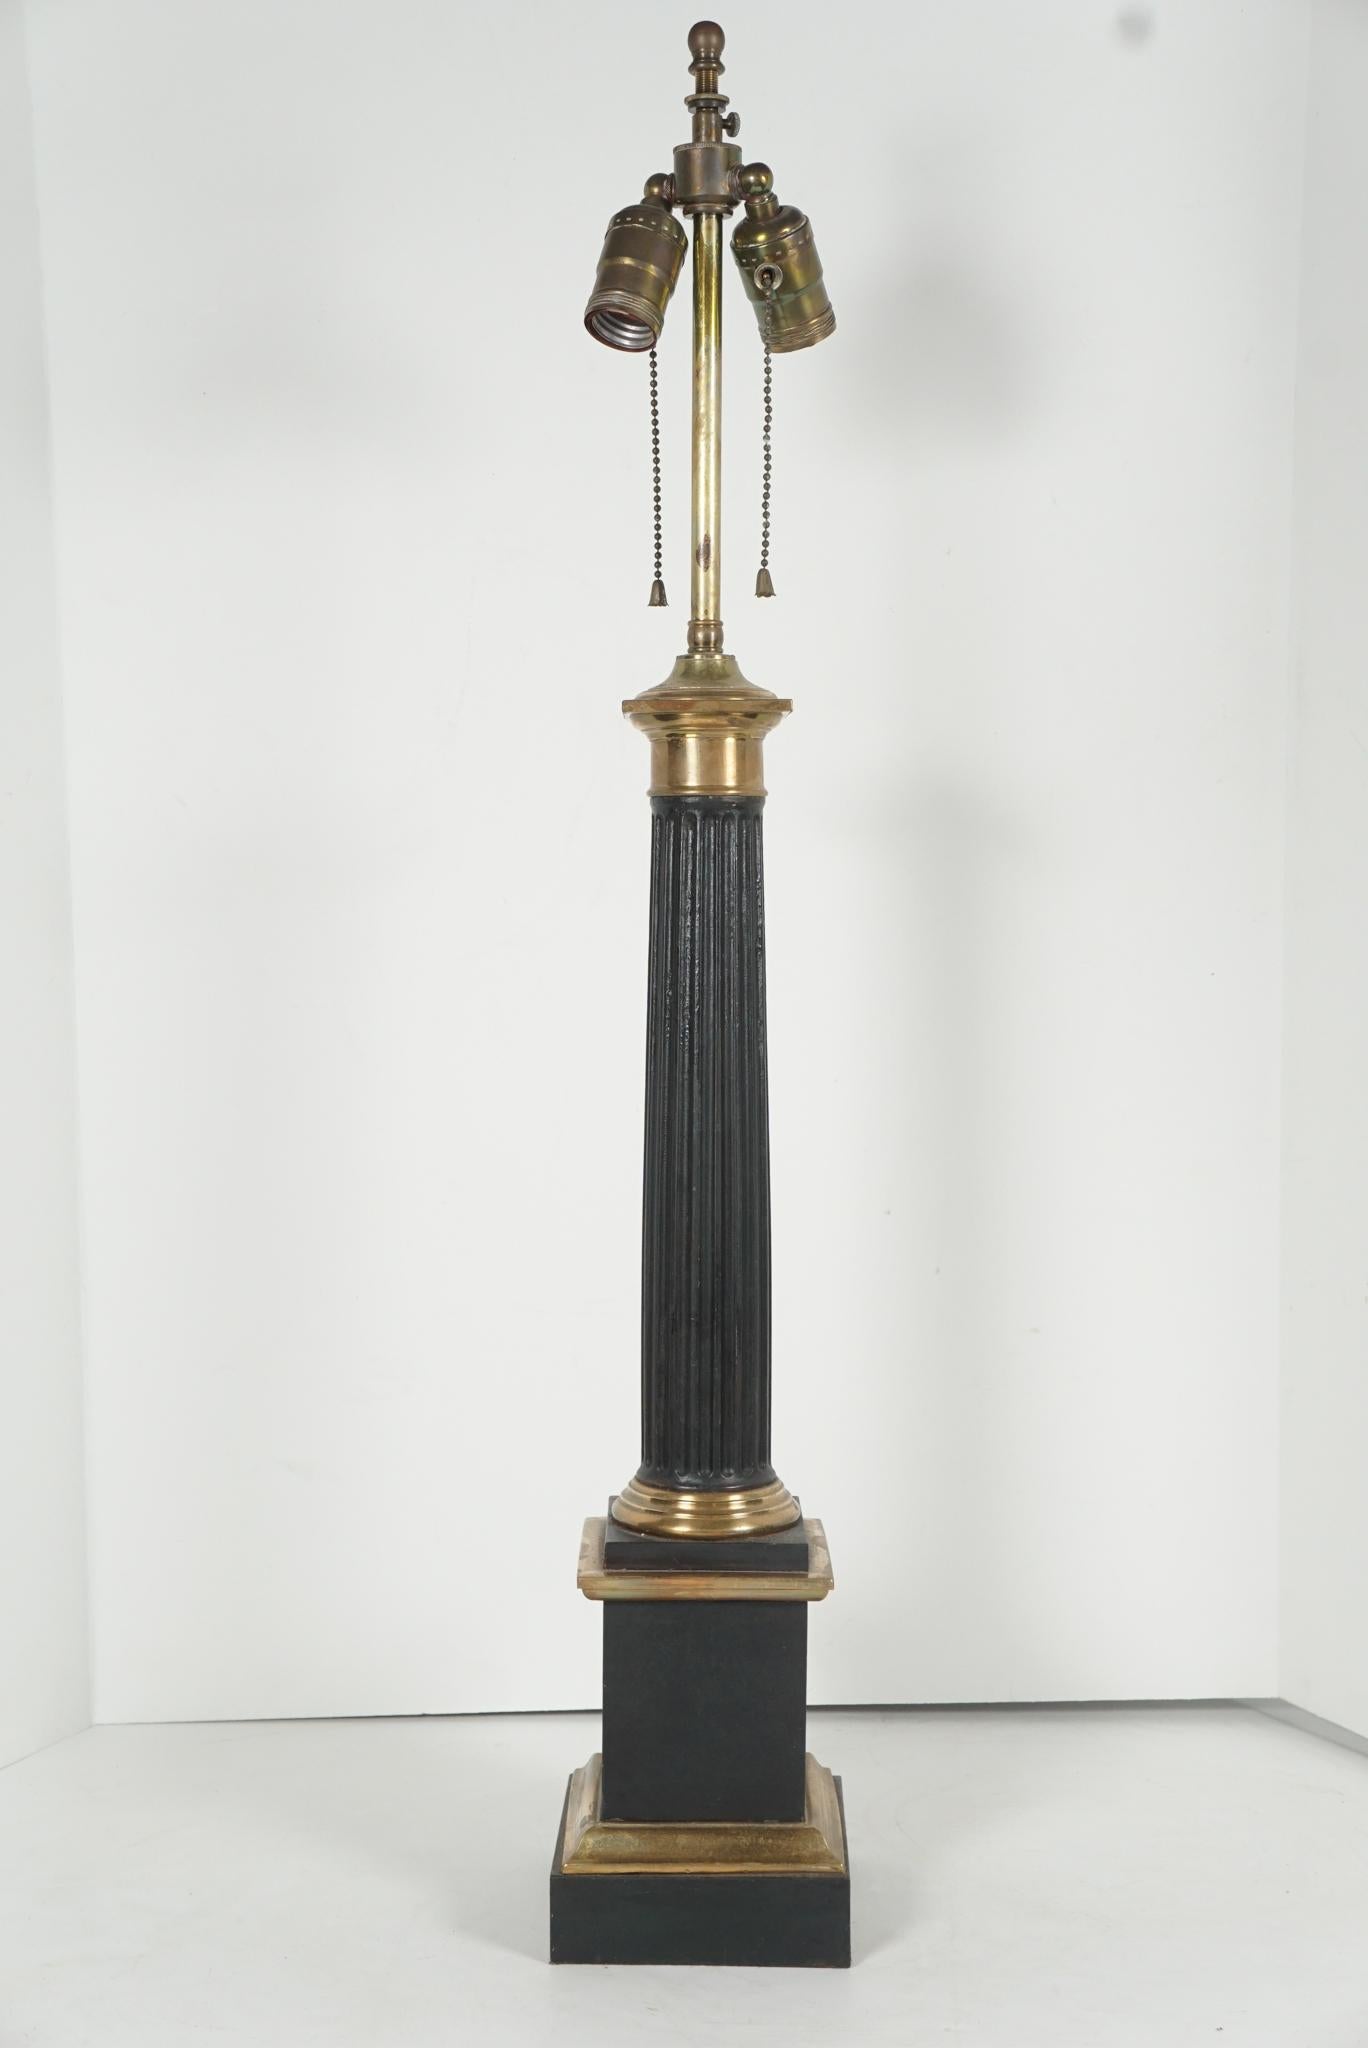 Cette lampe en carcel classique avait à l'origine un brûleur et un abat-jour en verre, mais elle est maintenant équipée pour l'électricité et nécessitera un abat-jour en tole ou en tissu. 
Conçue comme une colonne cannelée classique reposant sur une